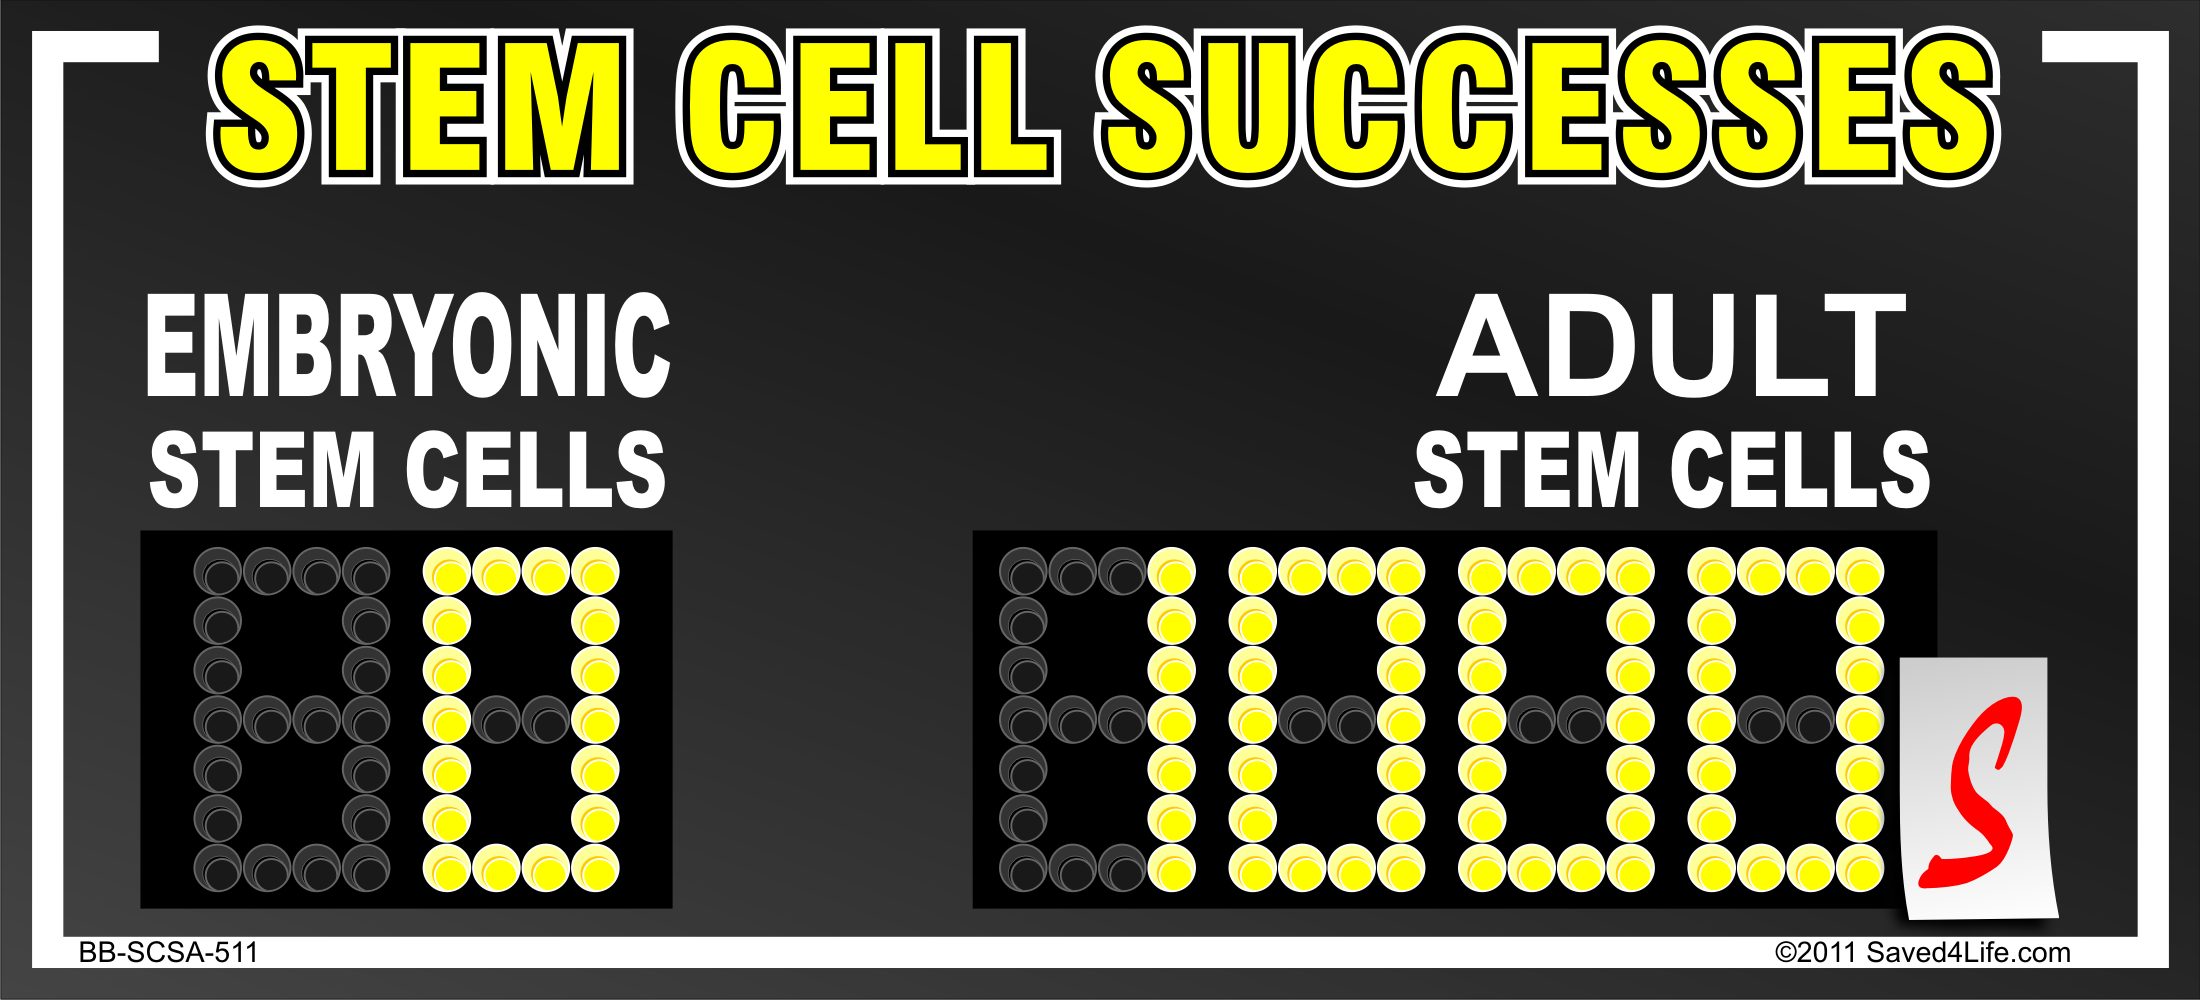 Stem Cell Successes 5x11 Billboard